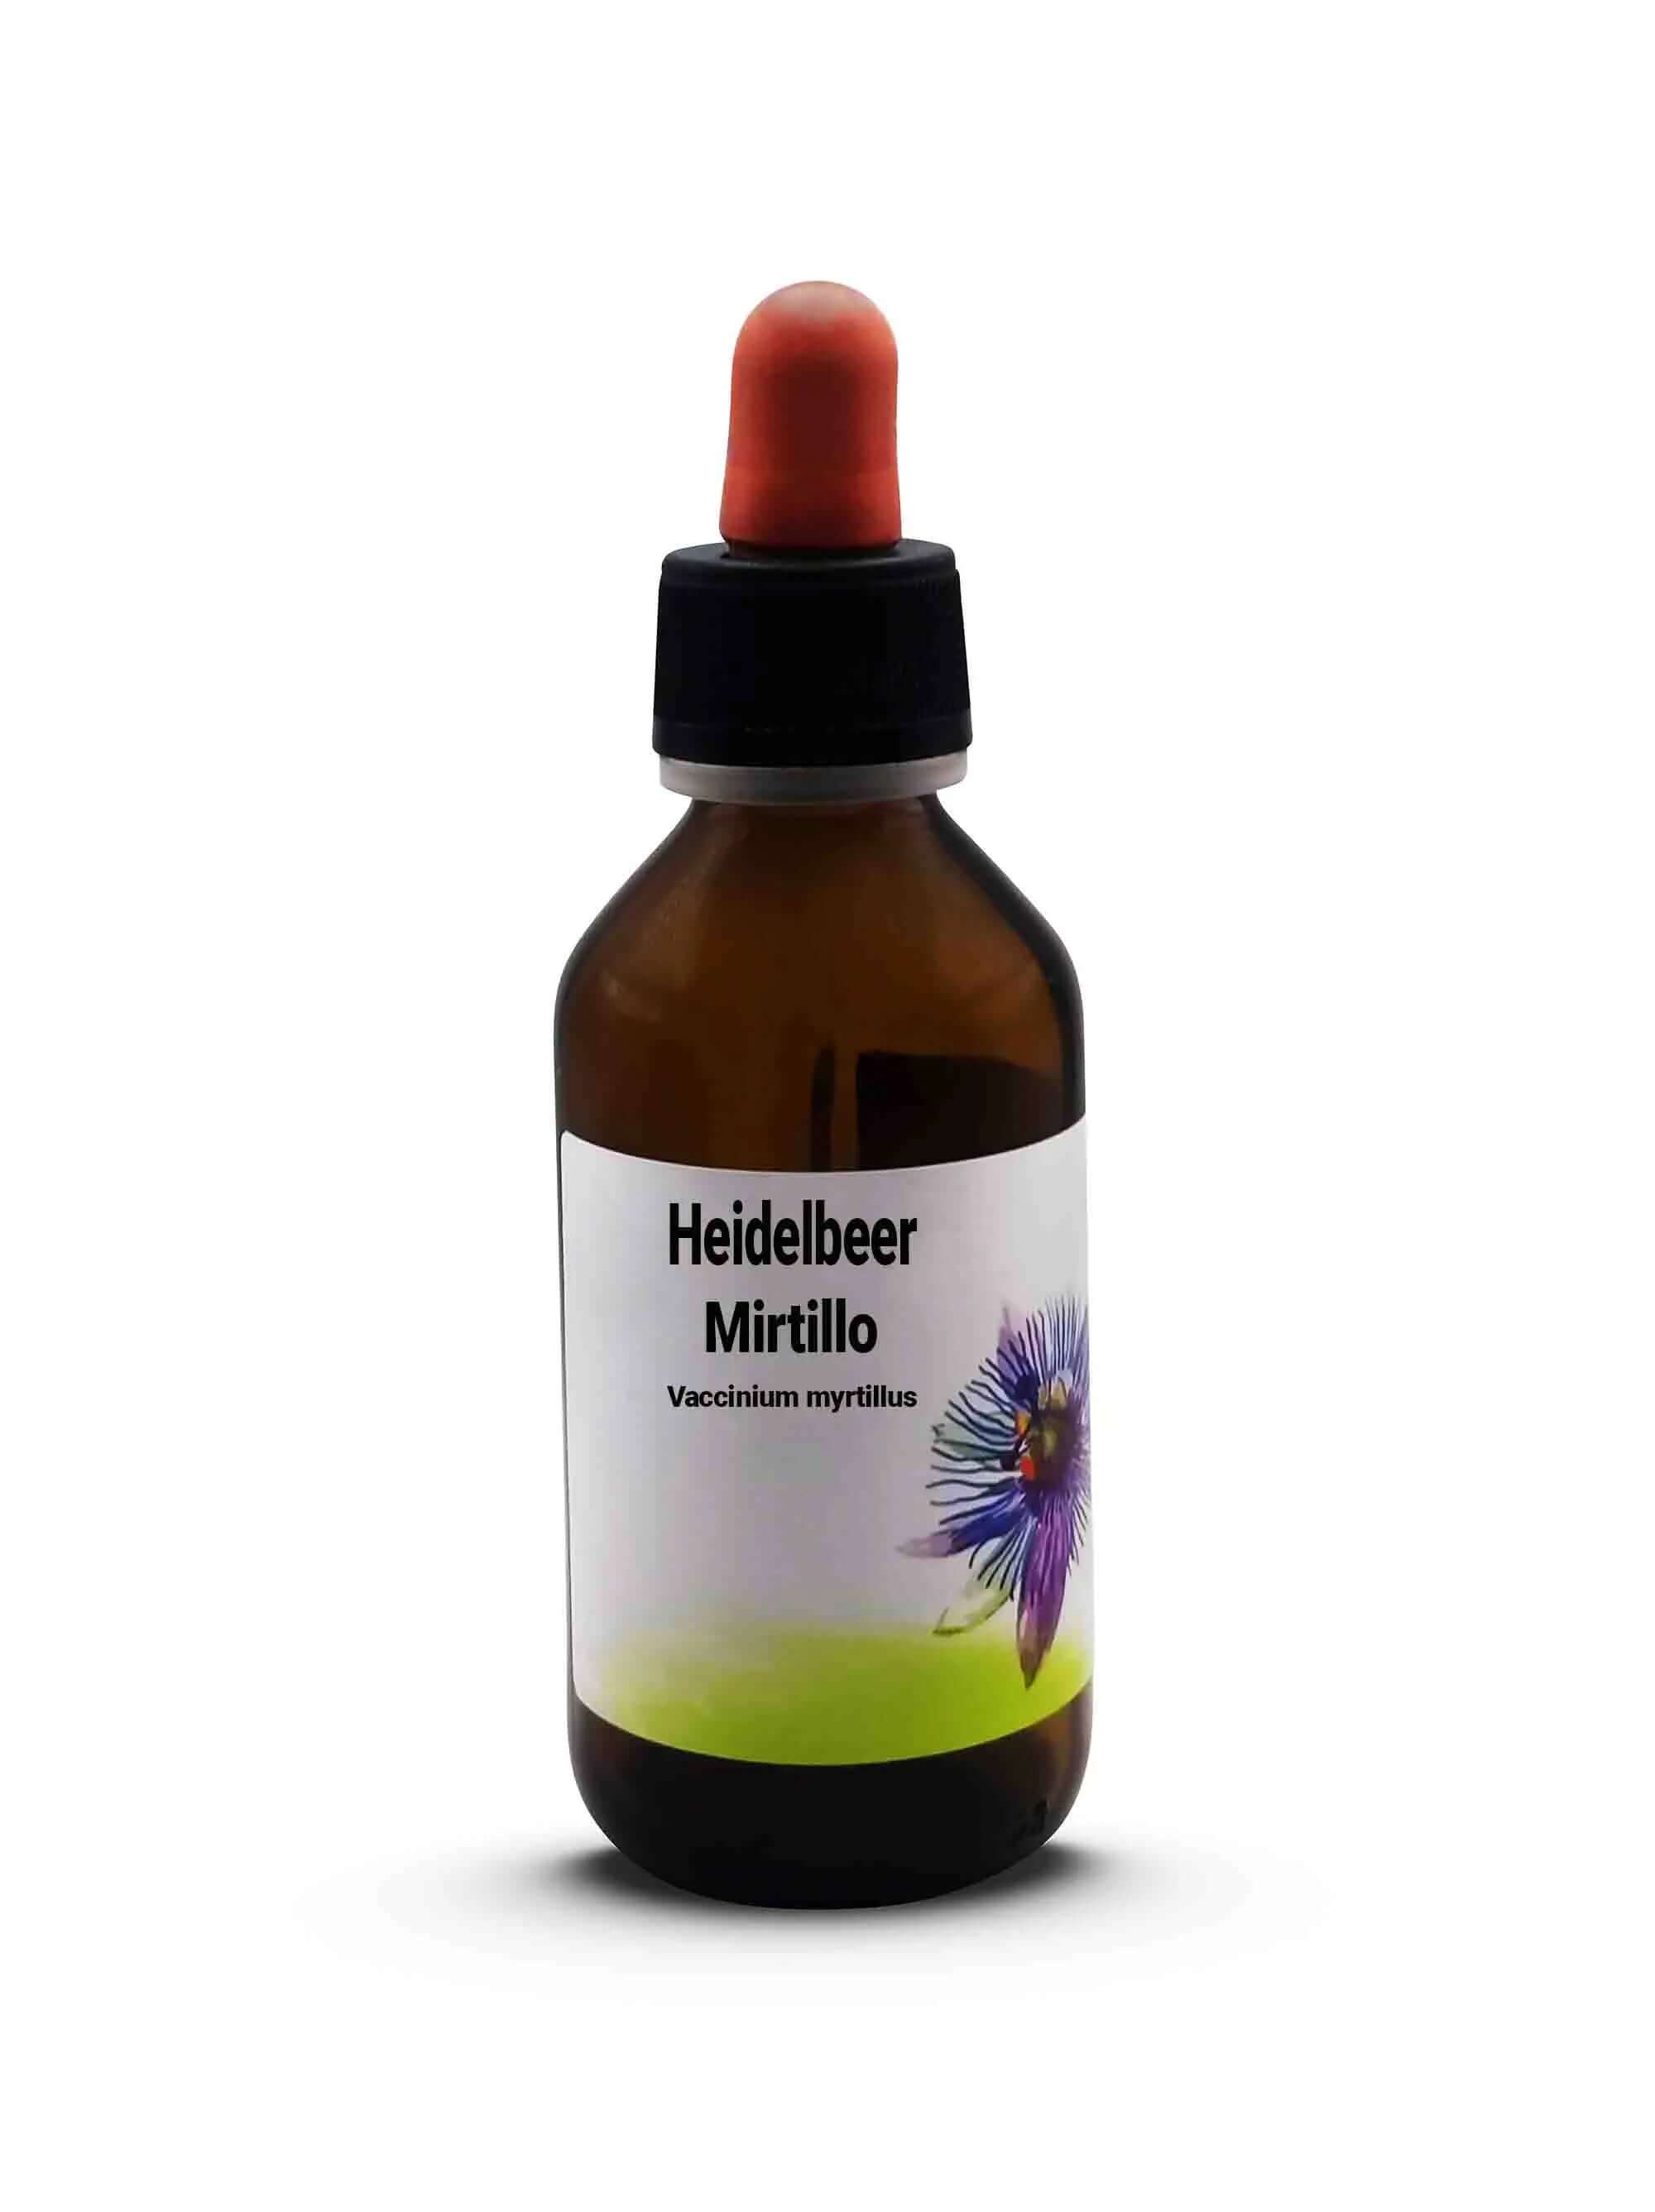 Heidelbeer Vaccinium myrtillus Mirtillo 100 ml